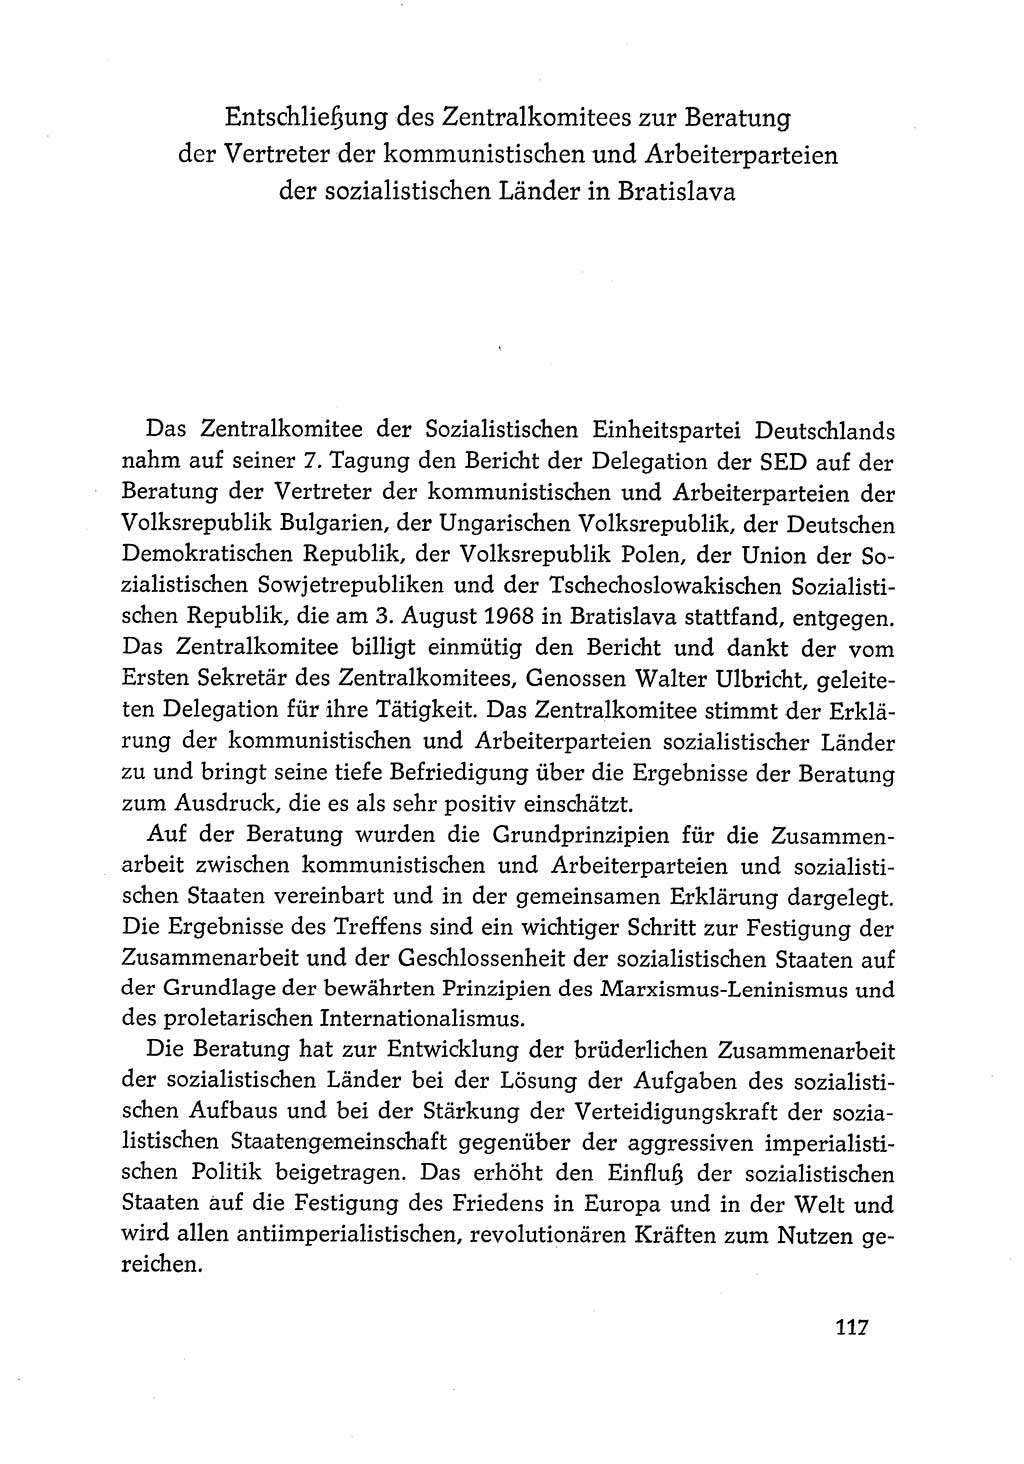 Dokumente der Sozialistischen Einheitspartei Deutschlands (SED) [Deutsche Demokratische Republik (DDR)] 1968-1969, Seite 117 (Dok. SED DDR 1968-1969, S. 117)